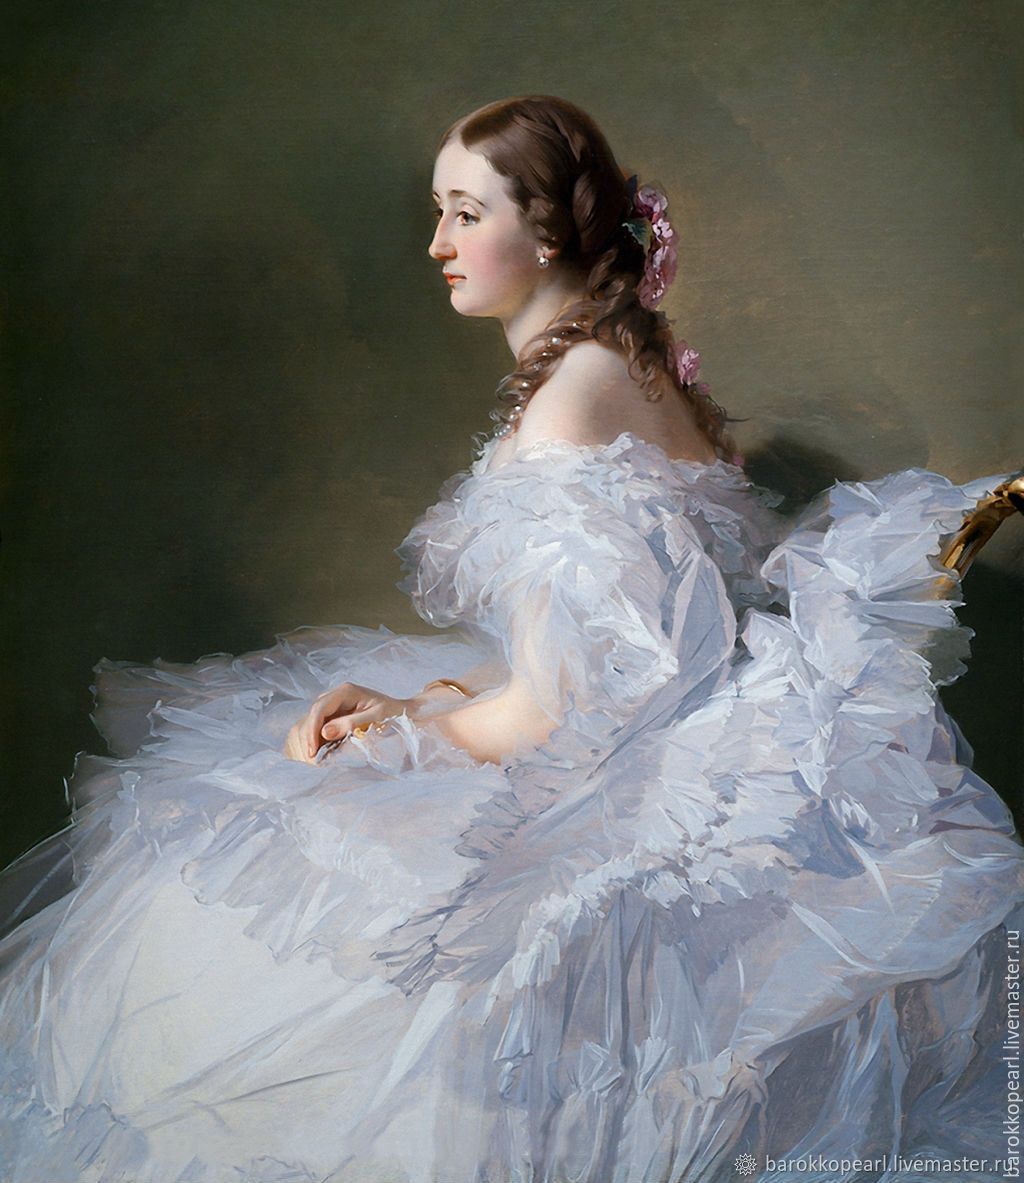 Красивые девушки 19 века в платьях